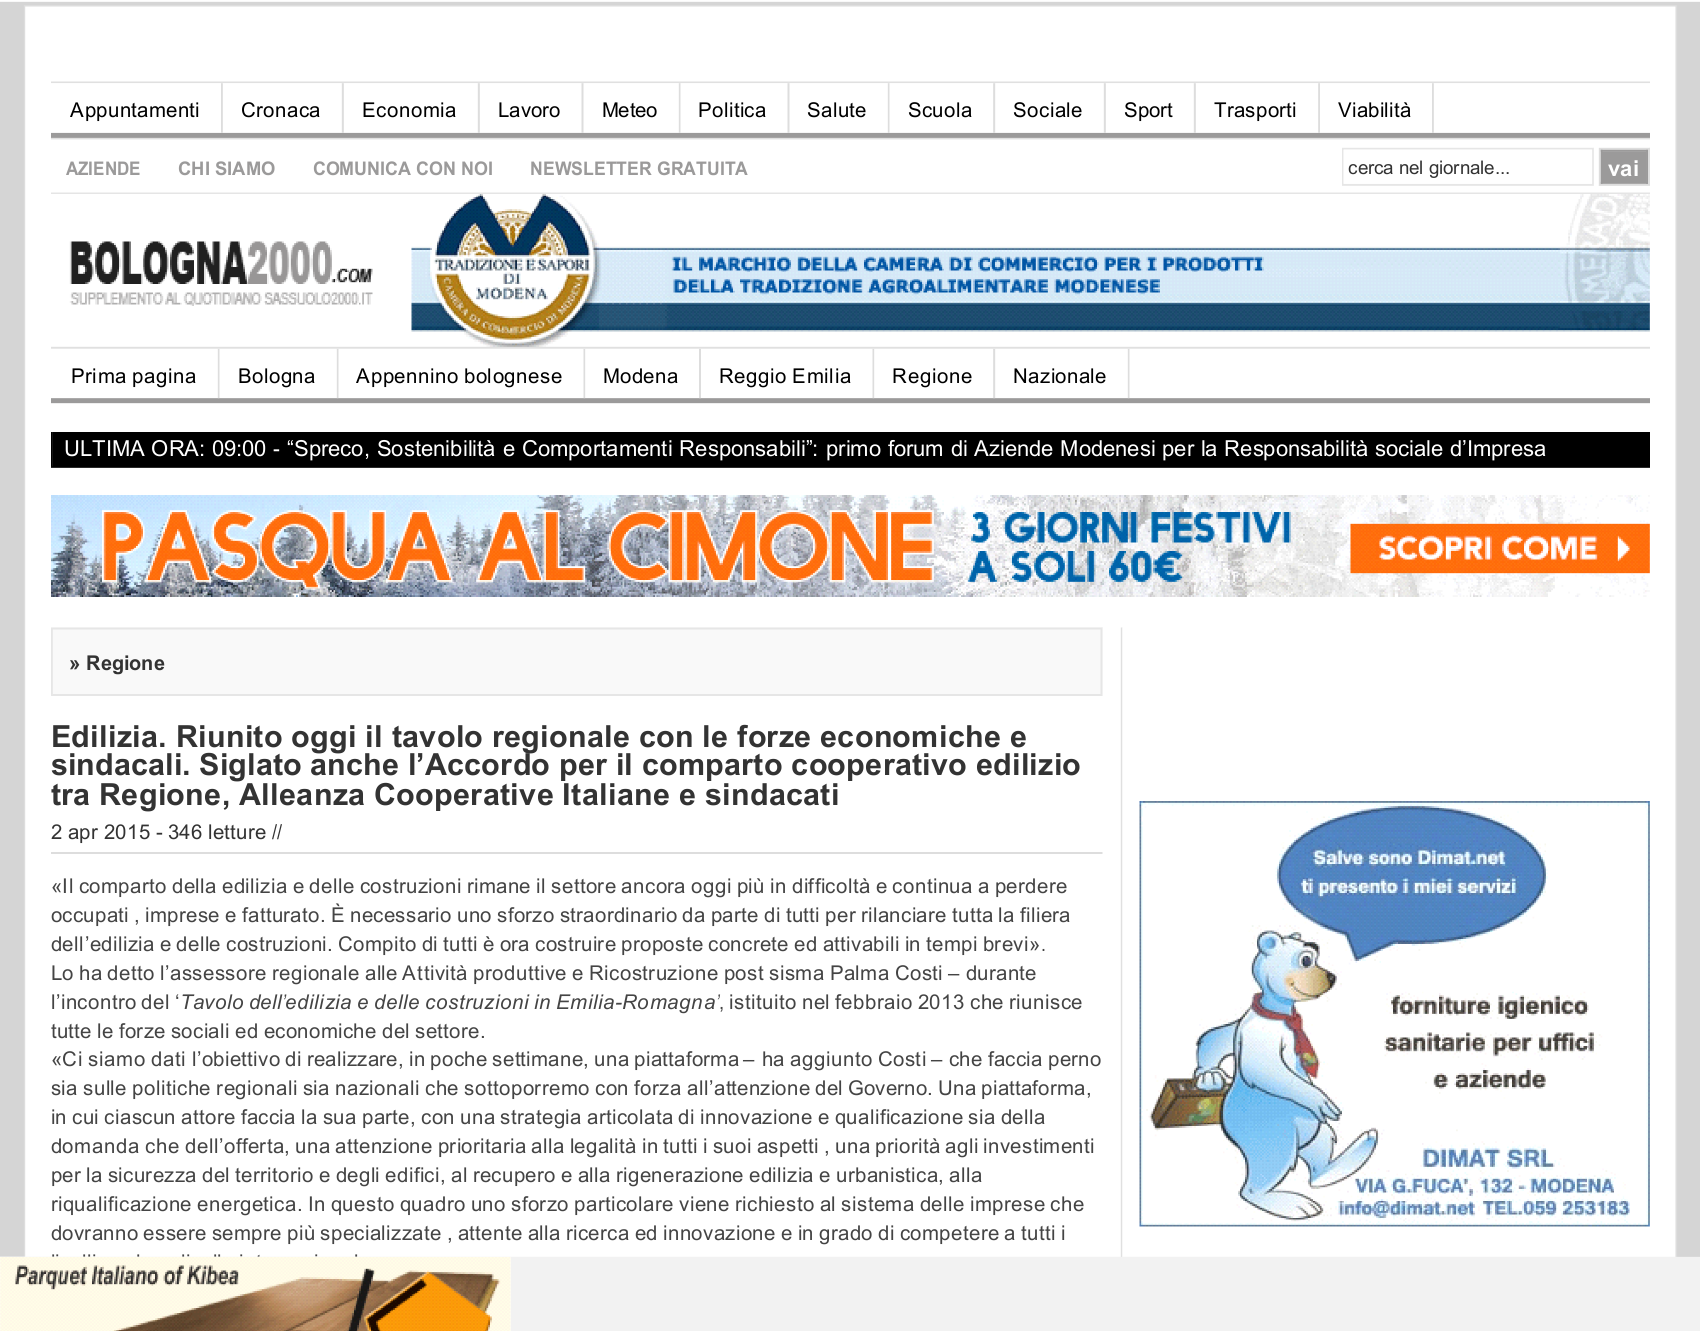 Articolo pubblicato sul sito bologna2000.com Più : www.alexa.com/siteinfo/bologna2000.com Estrazione : 02/04/2015 18:49:35 Categoria : Attualità regionale File : piwi-9-12-107796-20150402-1993693044.